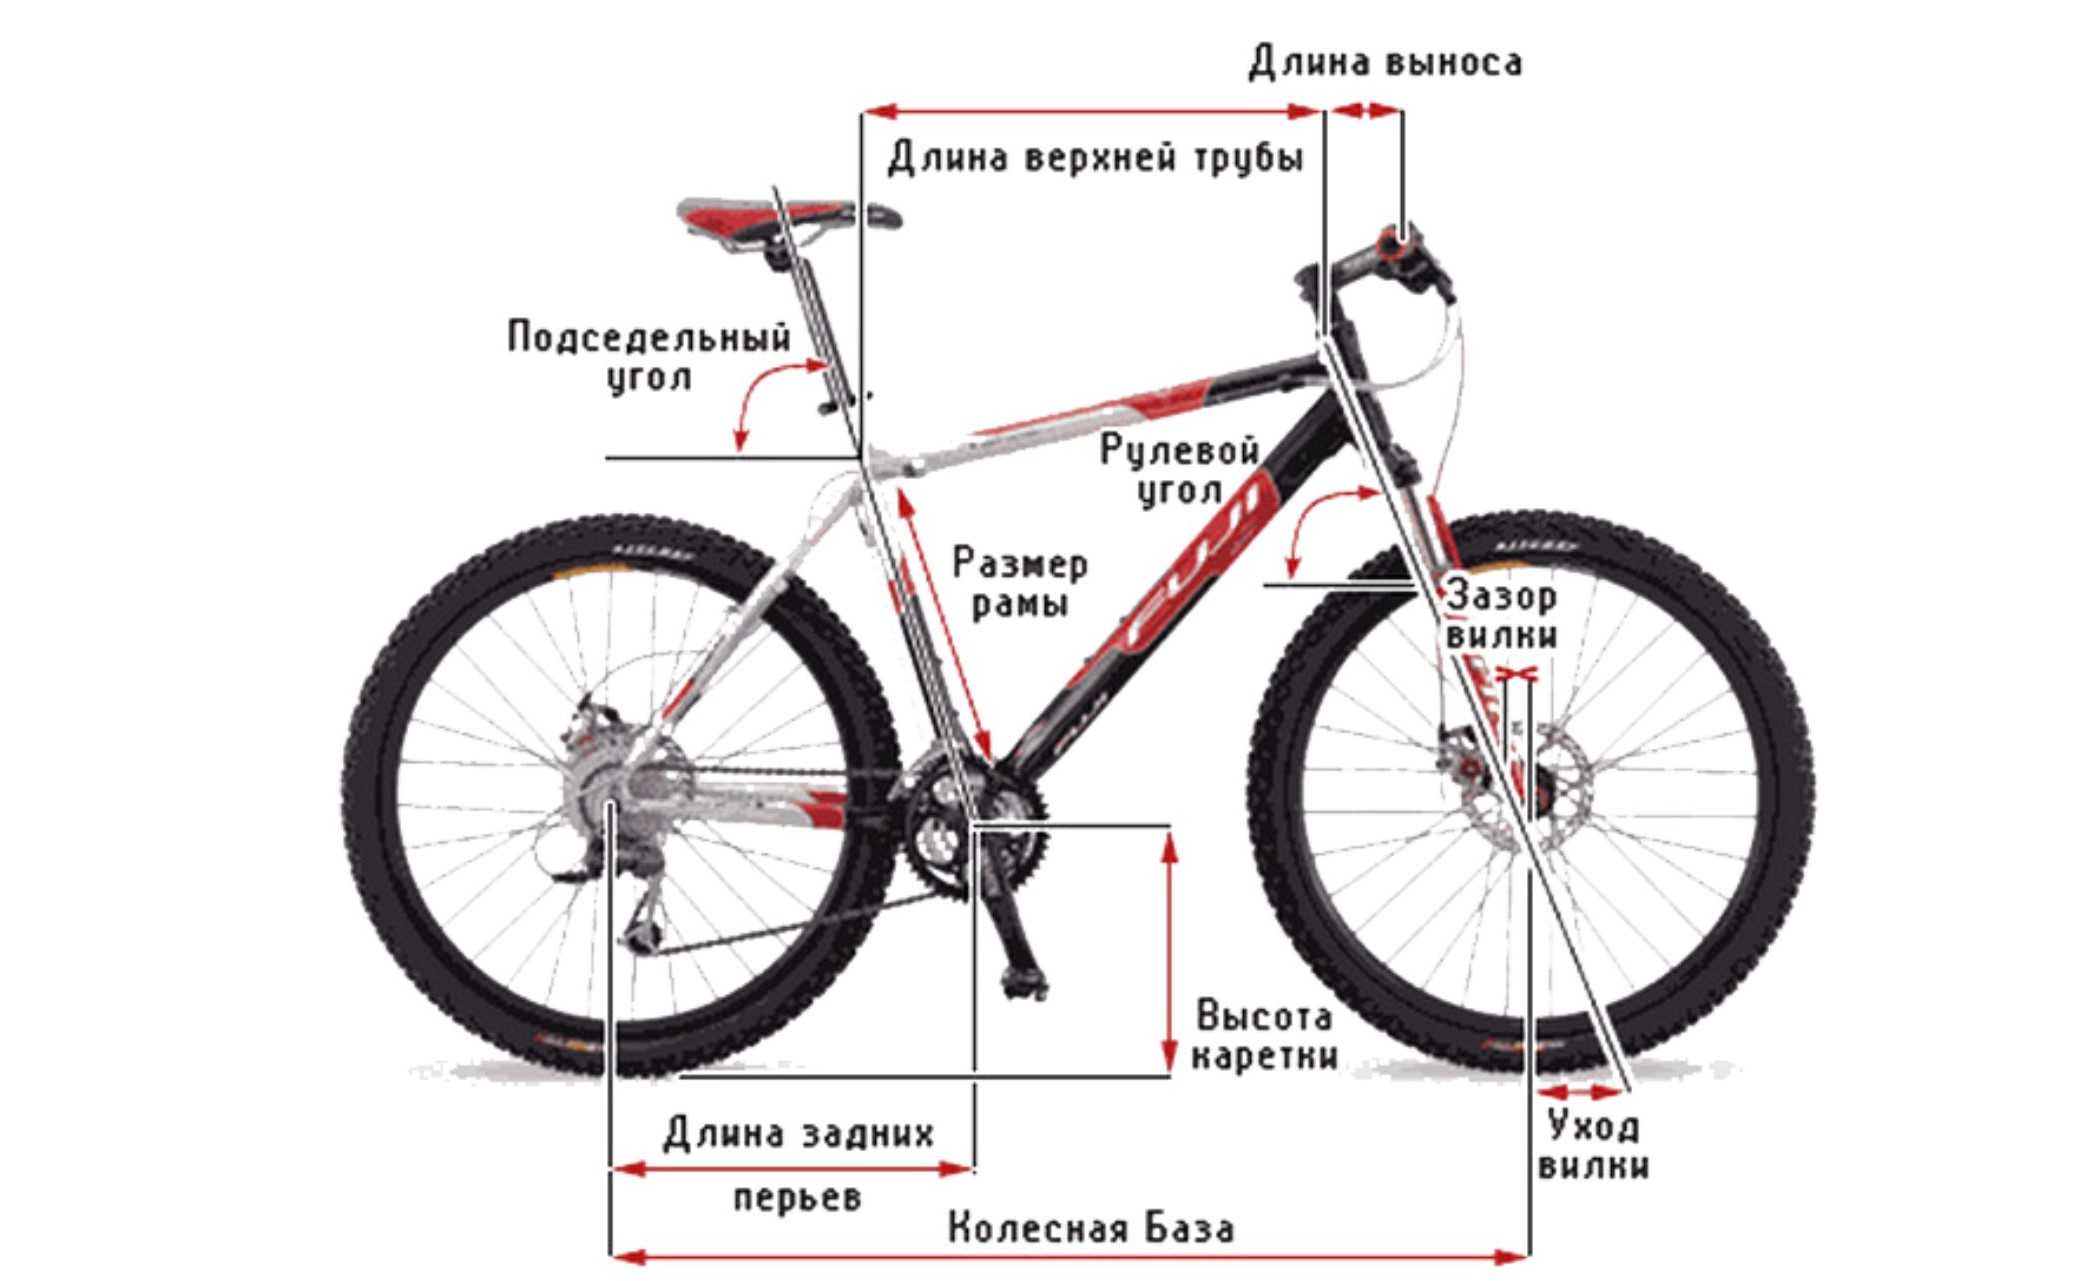 Как определить размер колеса велосипеда. Размер рамы велосипеда с диаметром колеса 27.5. Размер рамы - 16 " размер колес - 26 ". Длина велосипеда 27.5 с колёсами. Размер рамы 17,5, колеса 26.